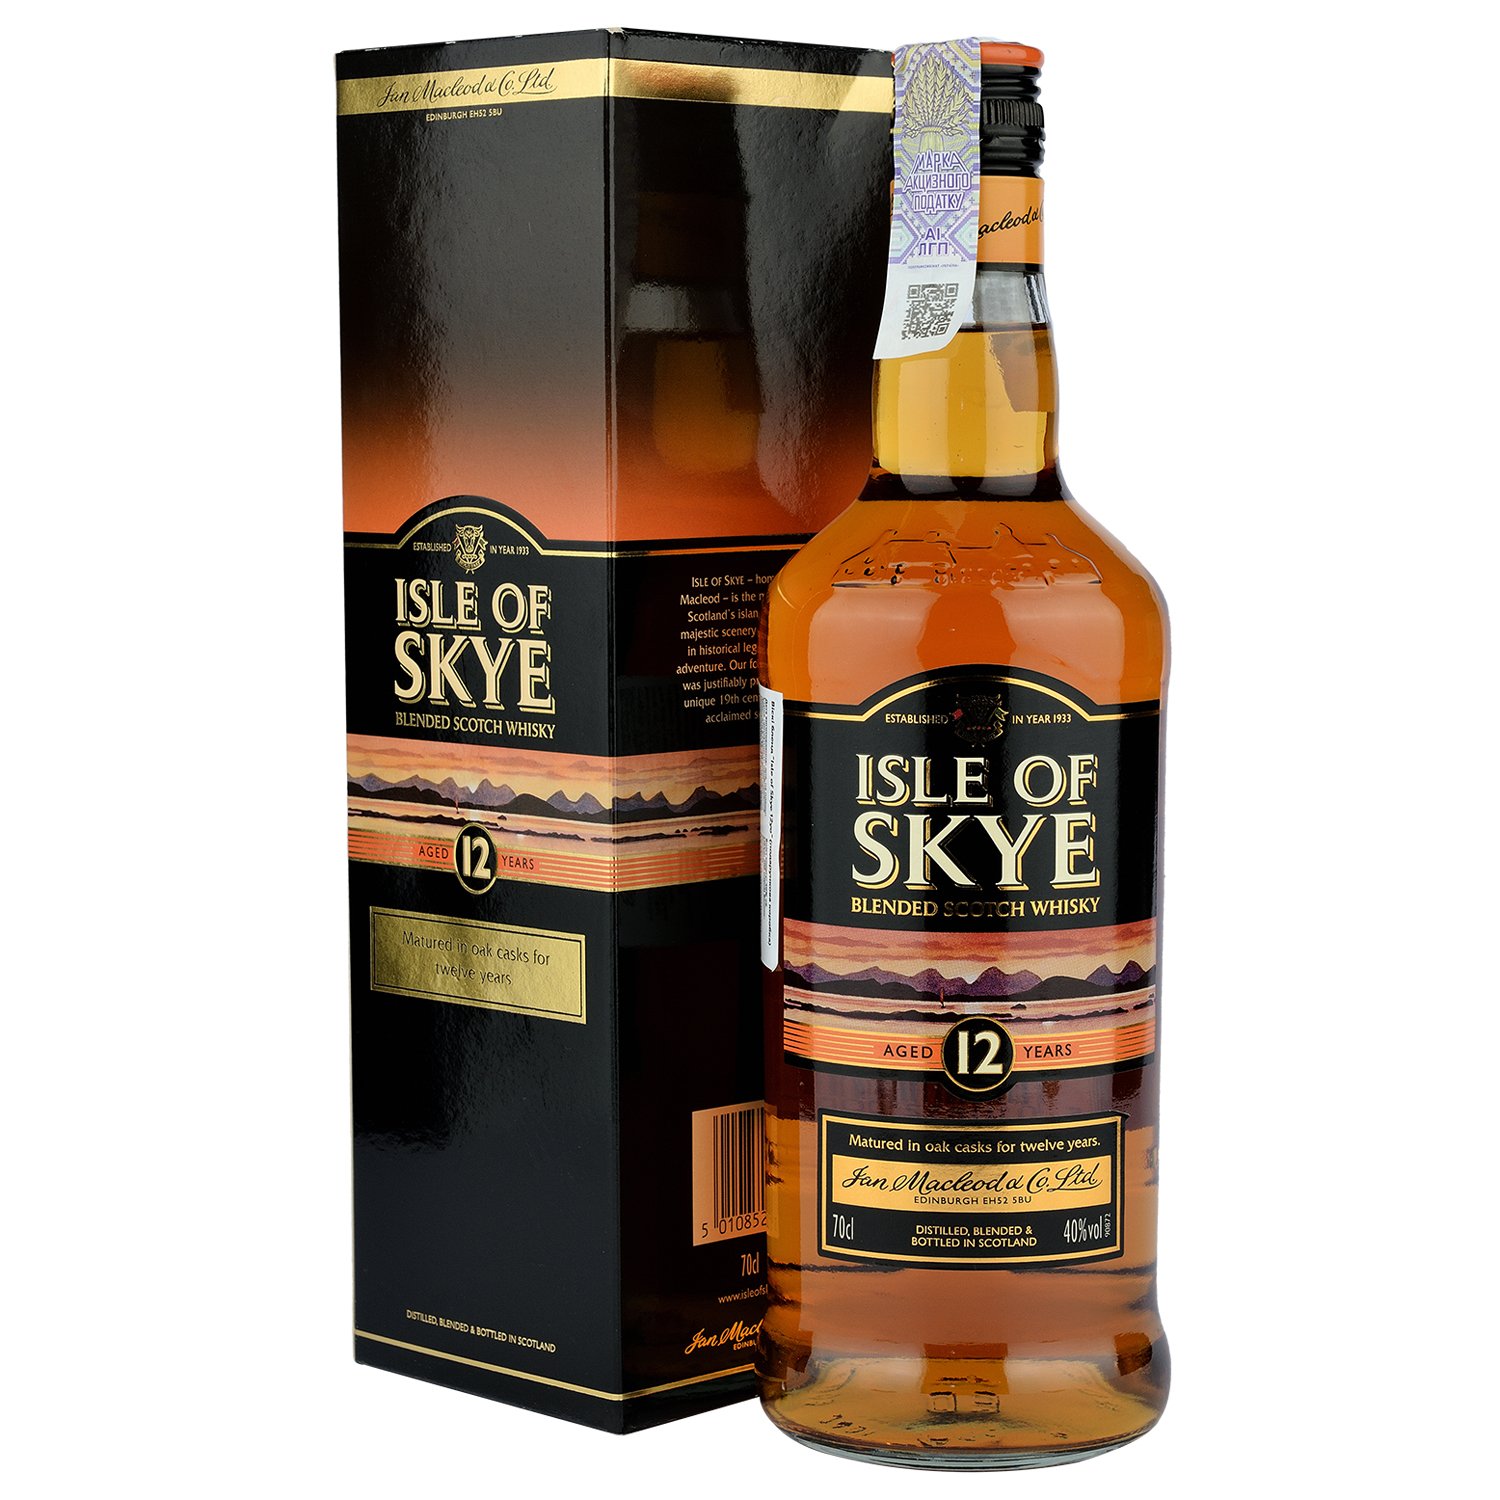 Виски Isle of Skye Blended Scotch Whisky 12 yo, в подарочной упаковке, 40%, 0,7 л - фото 1